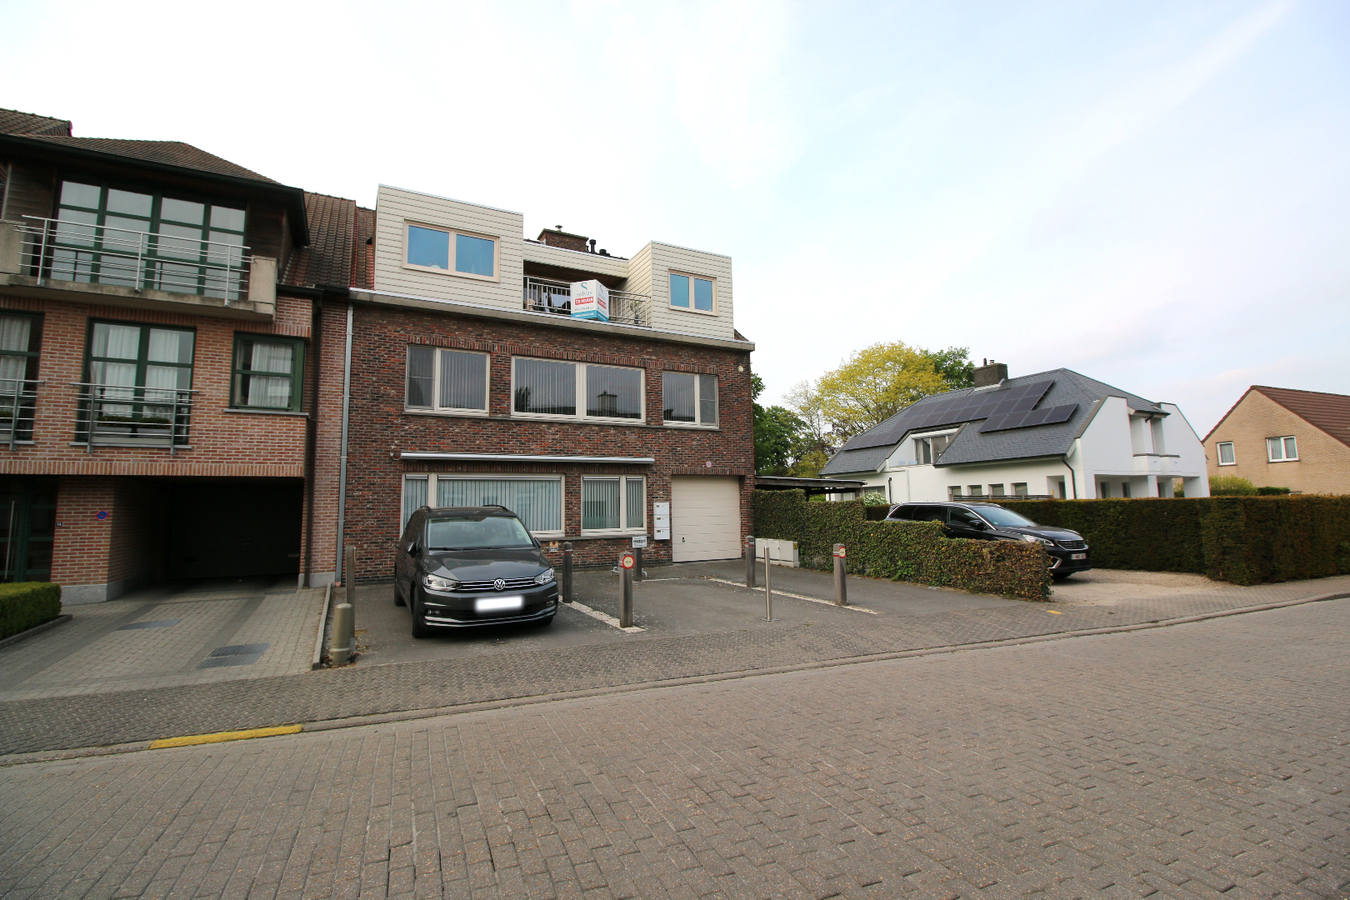 Recent appartement in centrum Zomergem! 